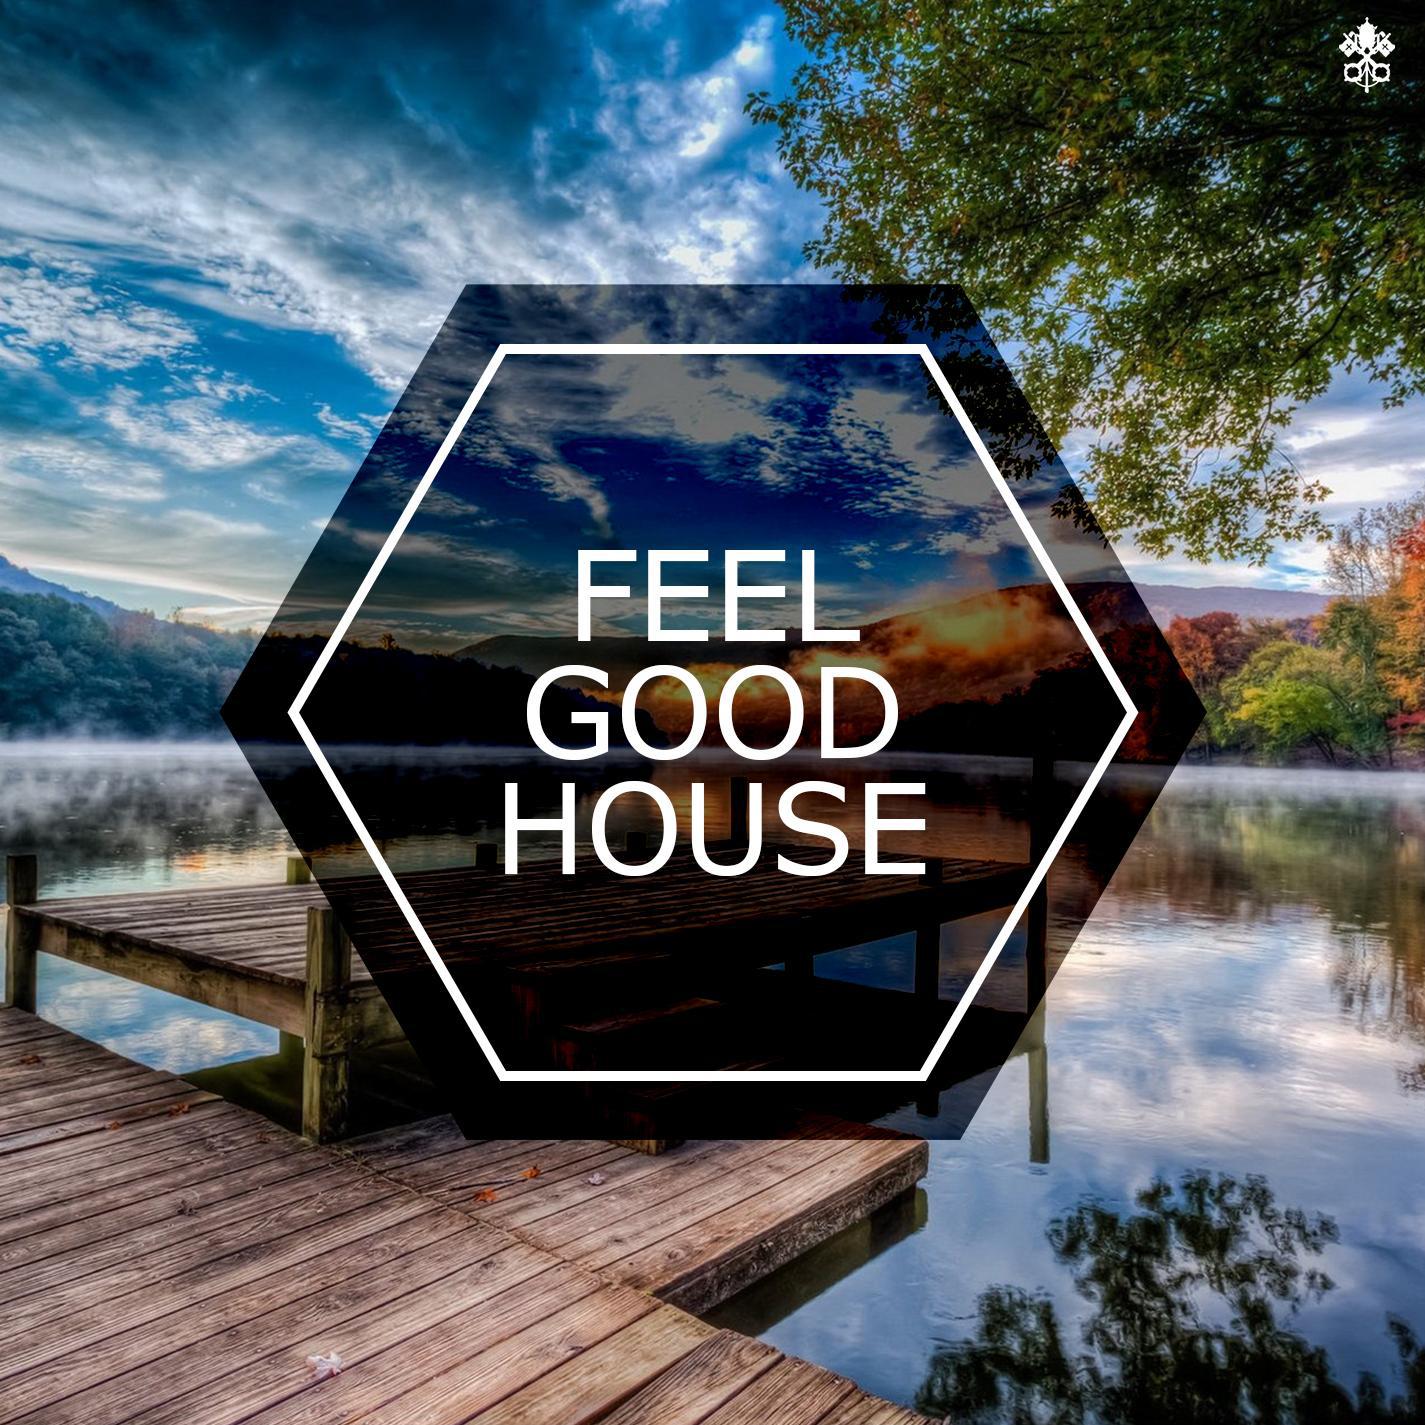 Feel Good House